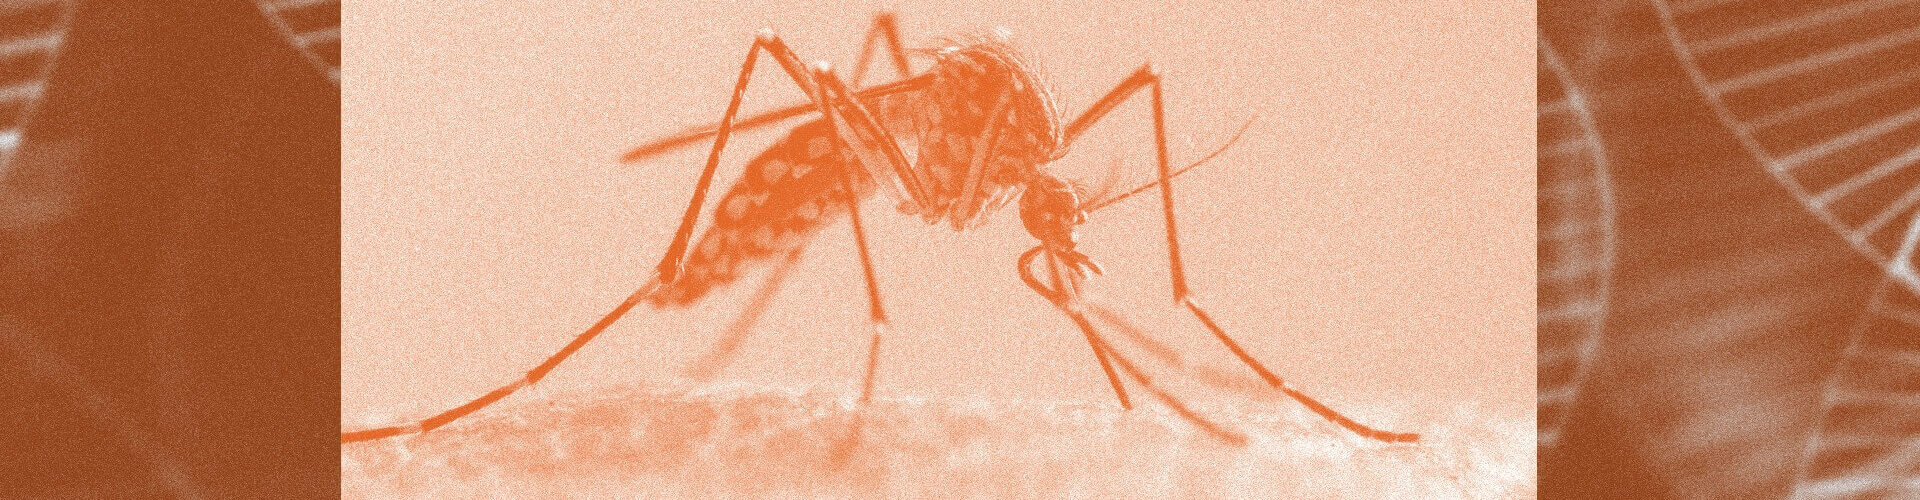 Genetski modifikovani komarci biće pušteni u Kaliforniji i na Floridi